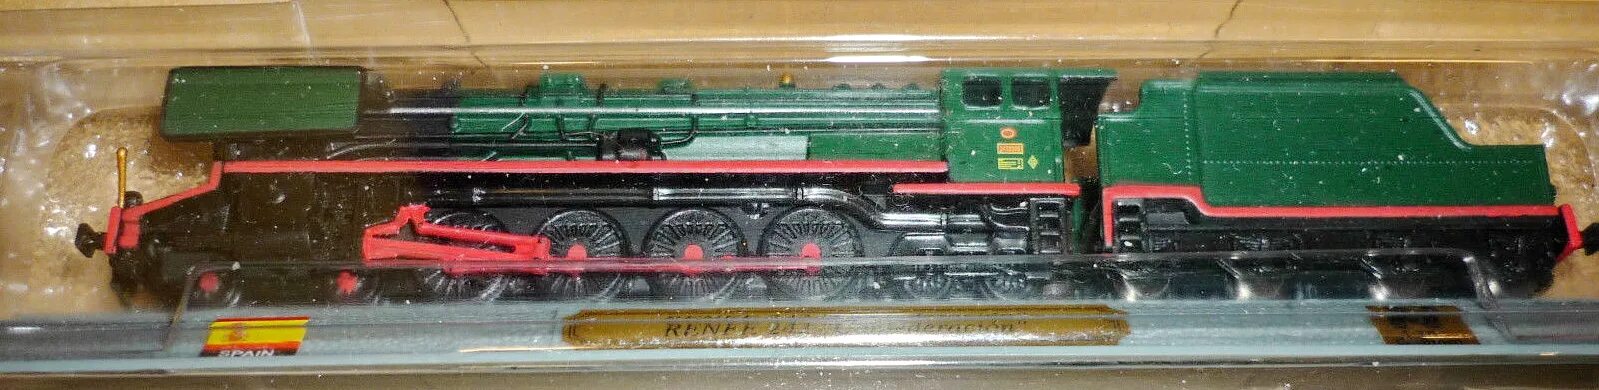 Масштабные модели локомотивов фирмы дель Прадо 1:160. : Del Prado locomotives of the World. Железнодорожный моделизм n 1:160. Модель авто 1:120 ТТ. 160 1 22